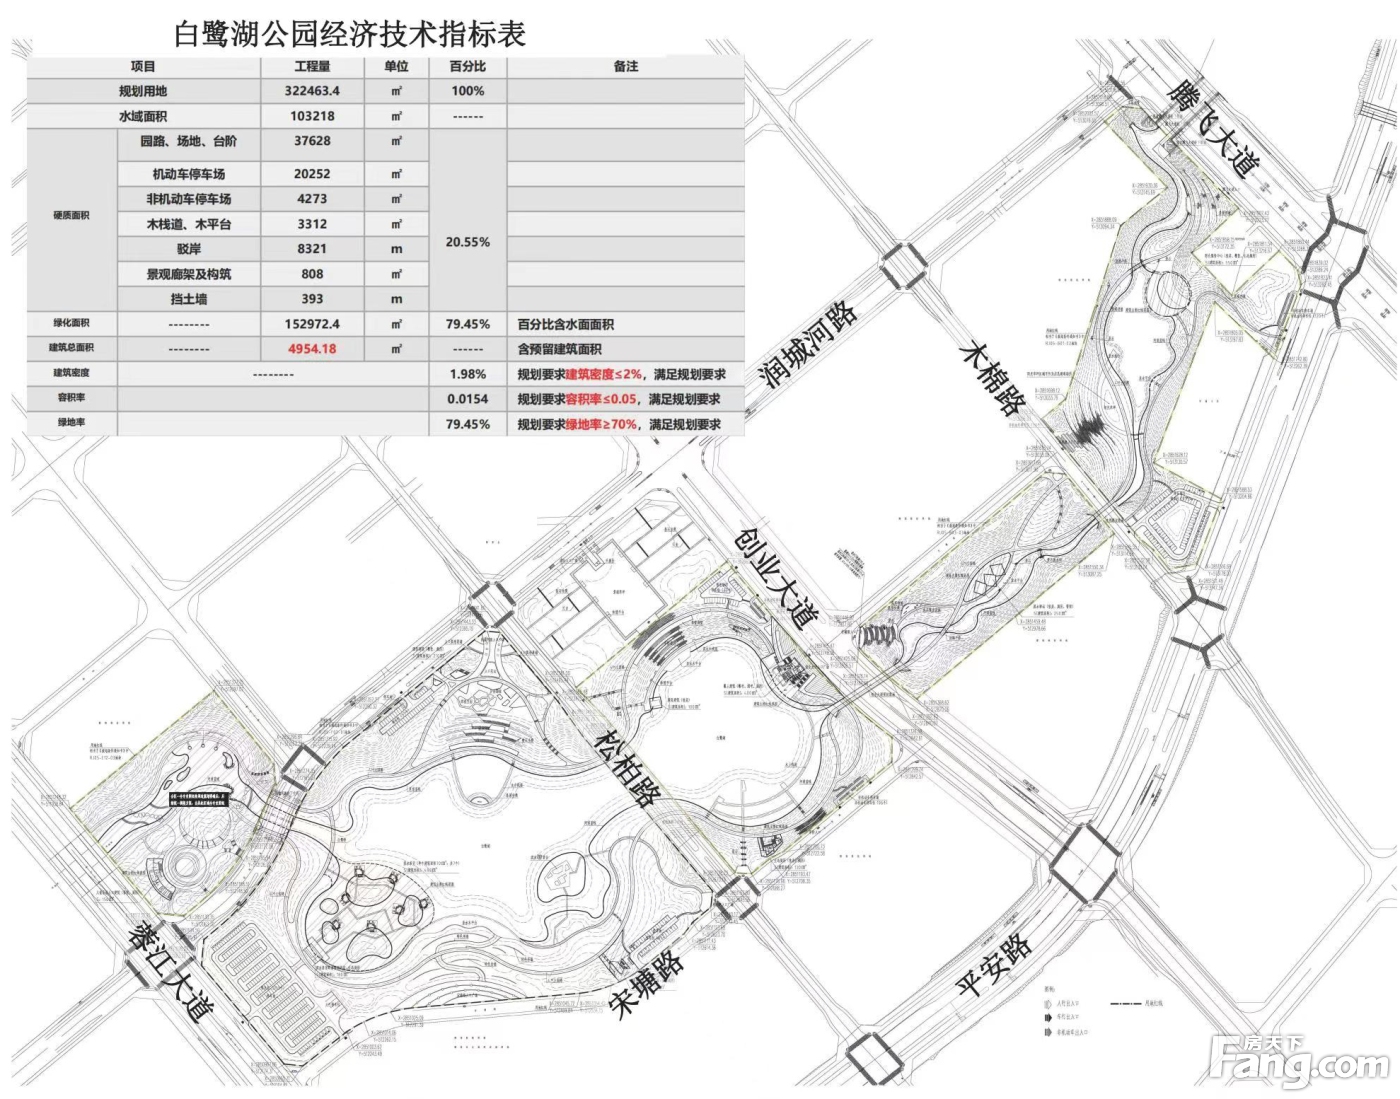 ！蓉江新区一新公园设计方案公示！效果图来了！